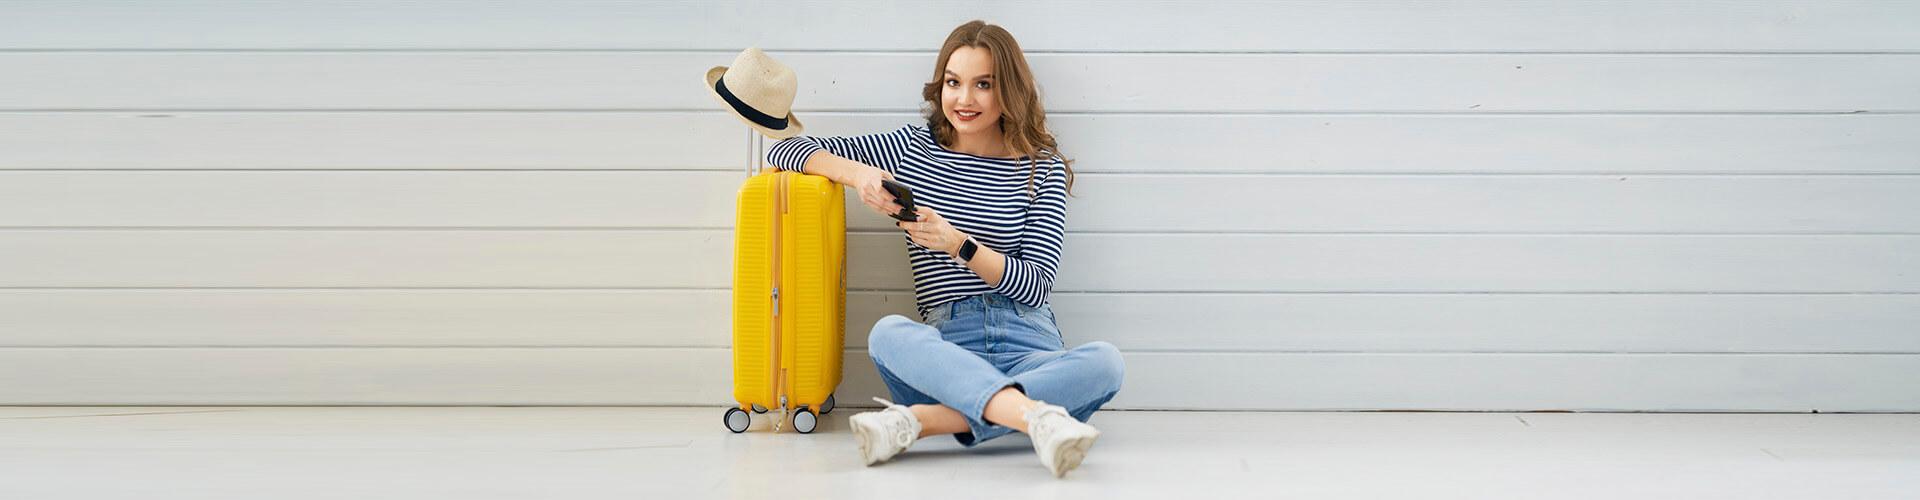 Segur d'Assistència en Viatge - Dona jove asseguda en el sòl amb el mòbil a la mà, al costat de la seua maleta i un barret preparant un viatge